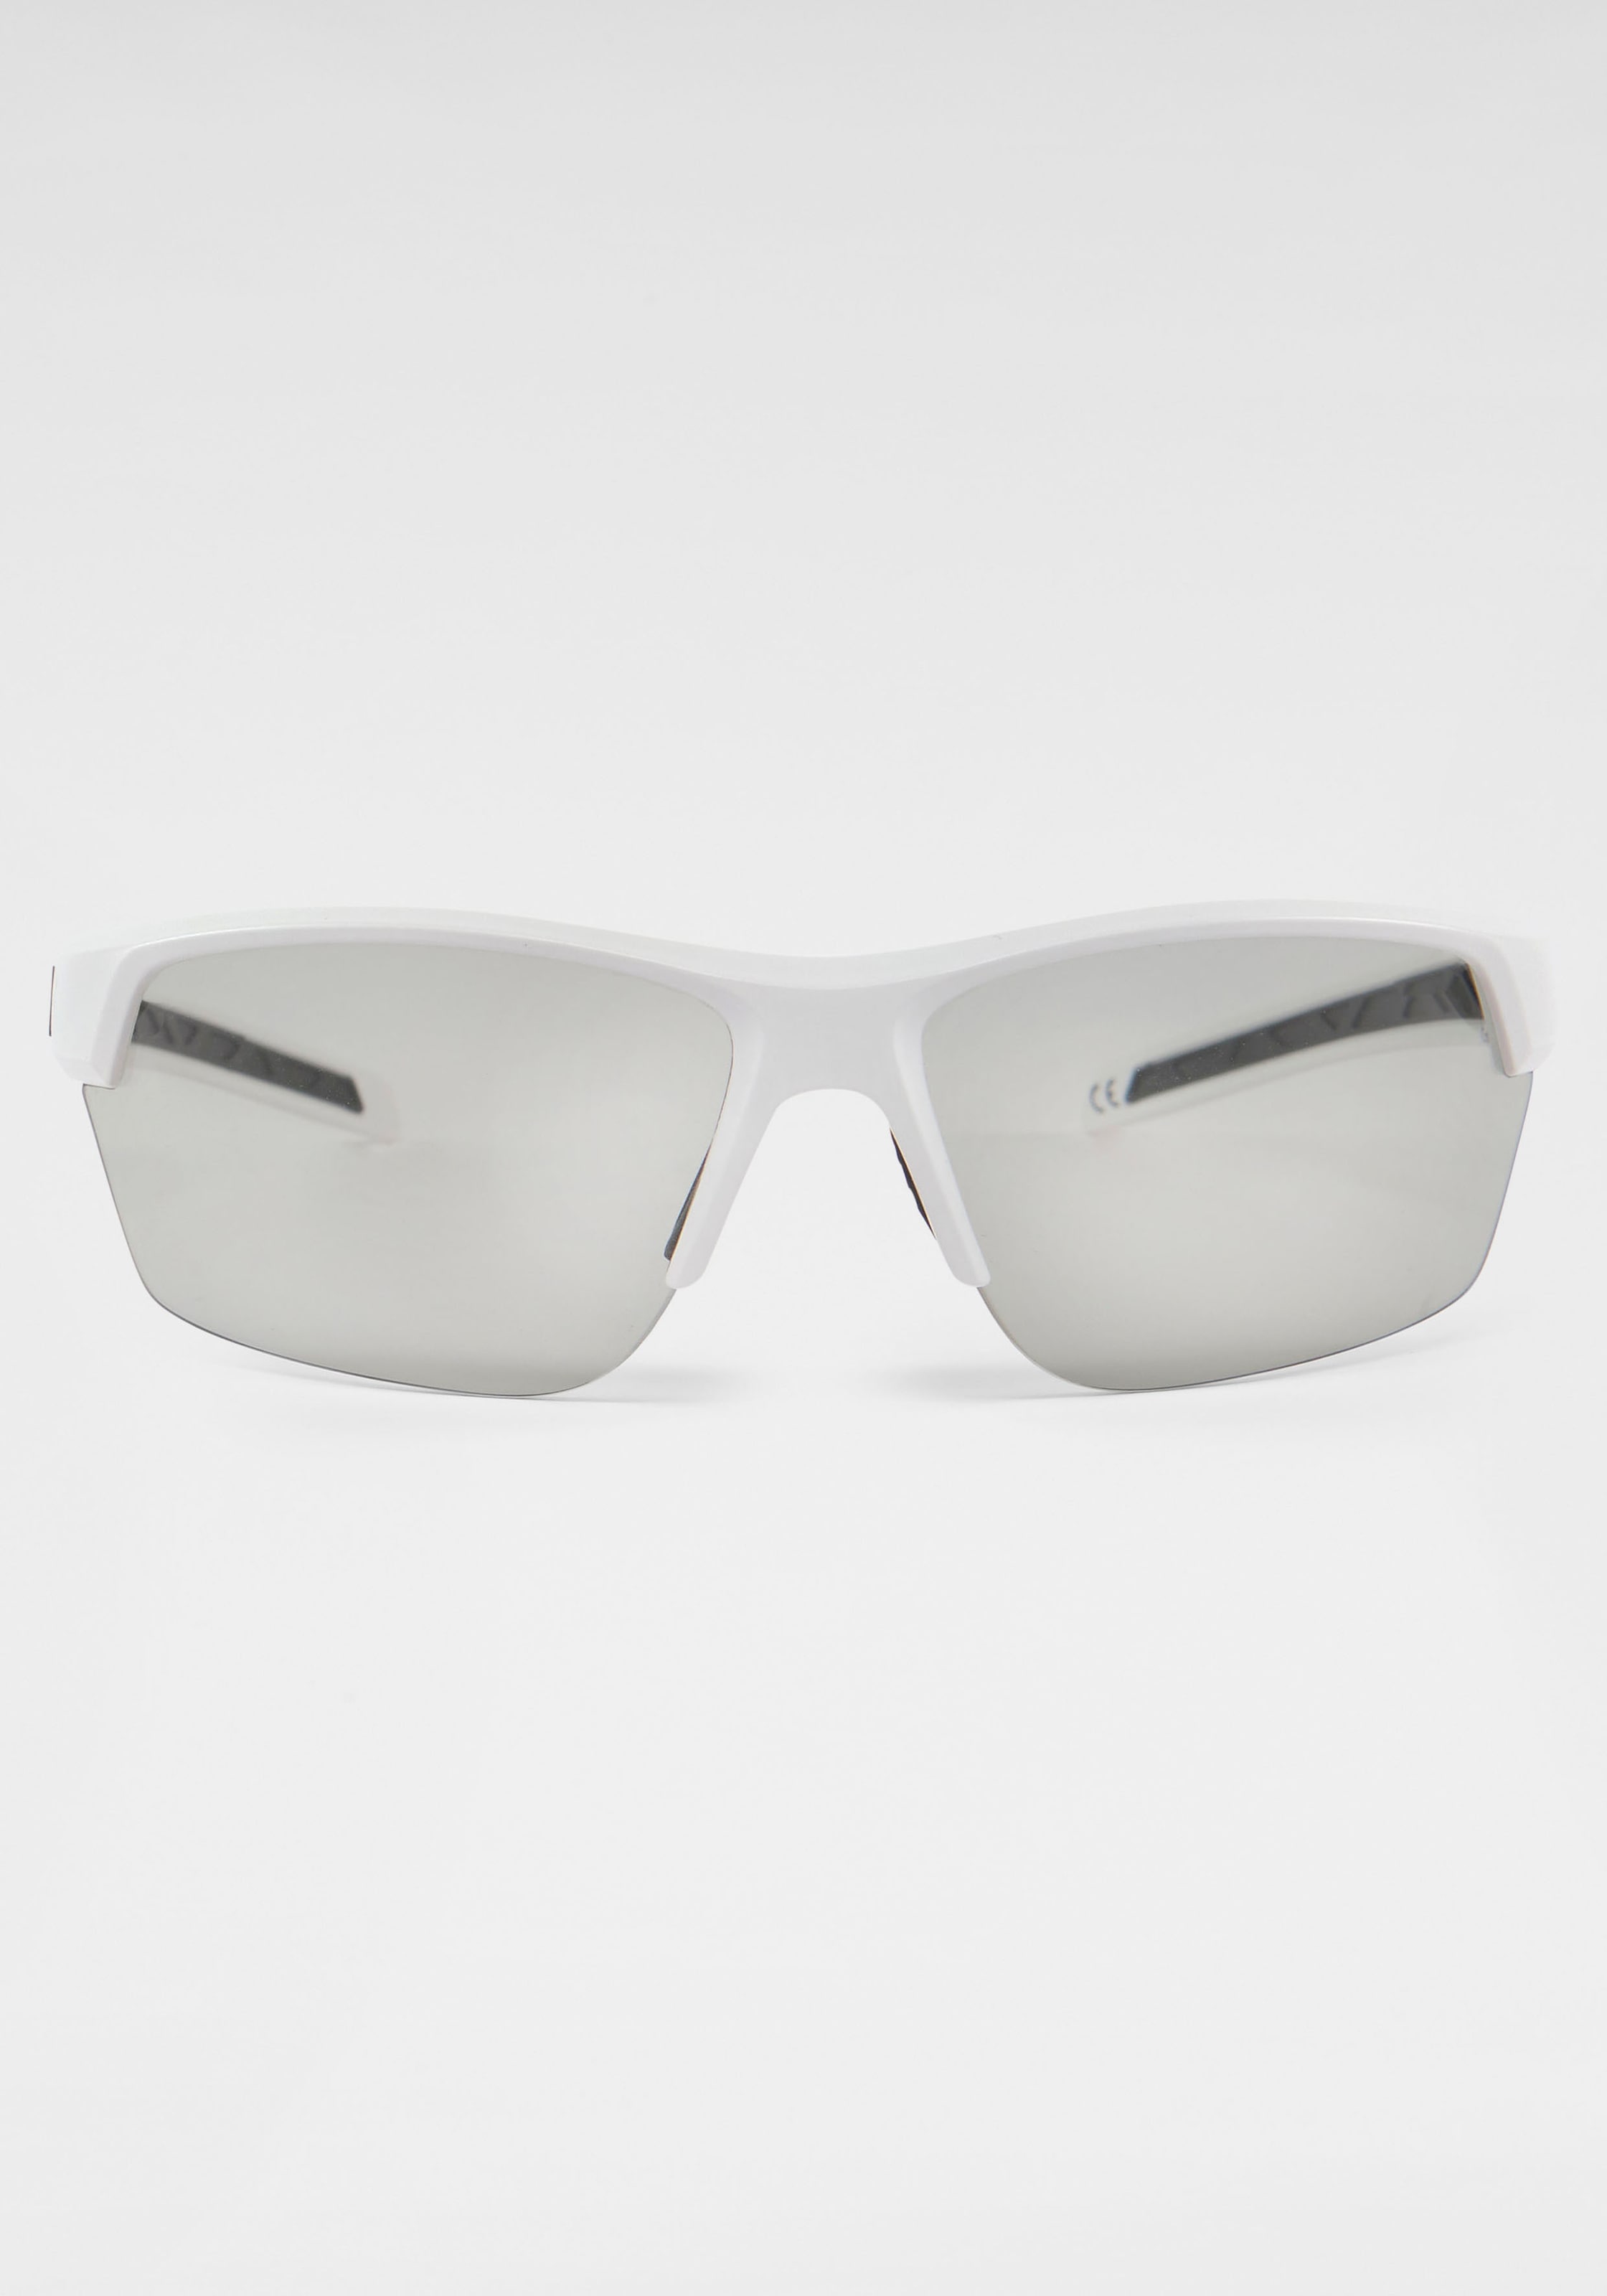 BACK IN BLACK Eyewear Sonnenbrille, Verspiegelte Gläser für kaufen | BAUR